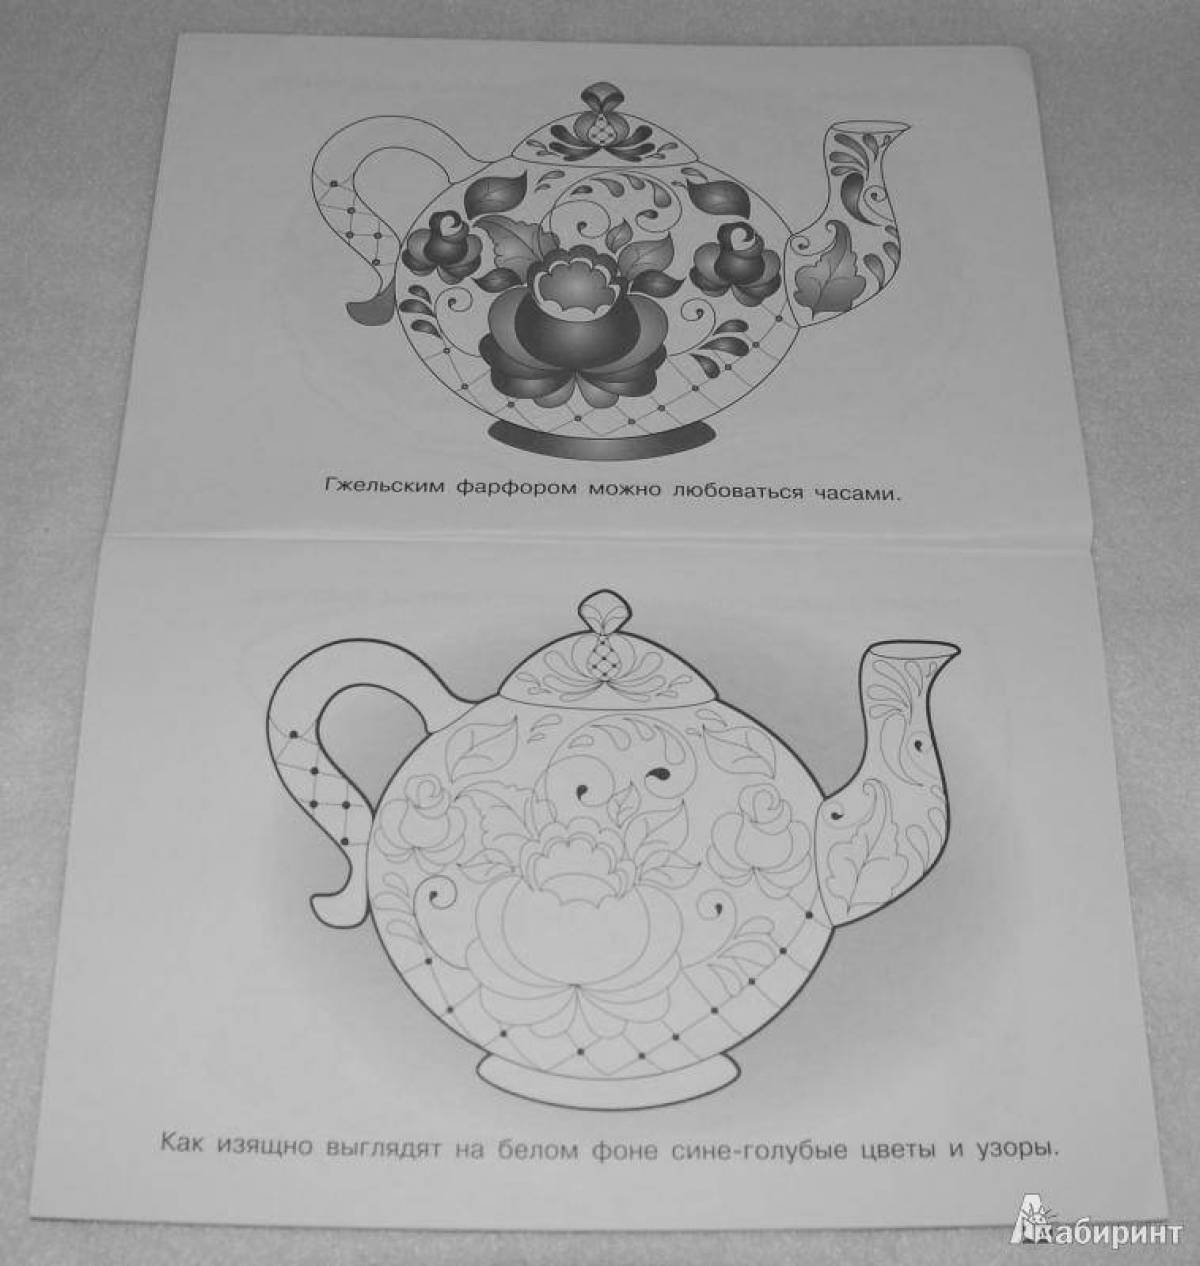 Picturesque gzhel teapot coloring